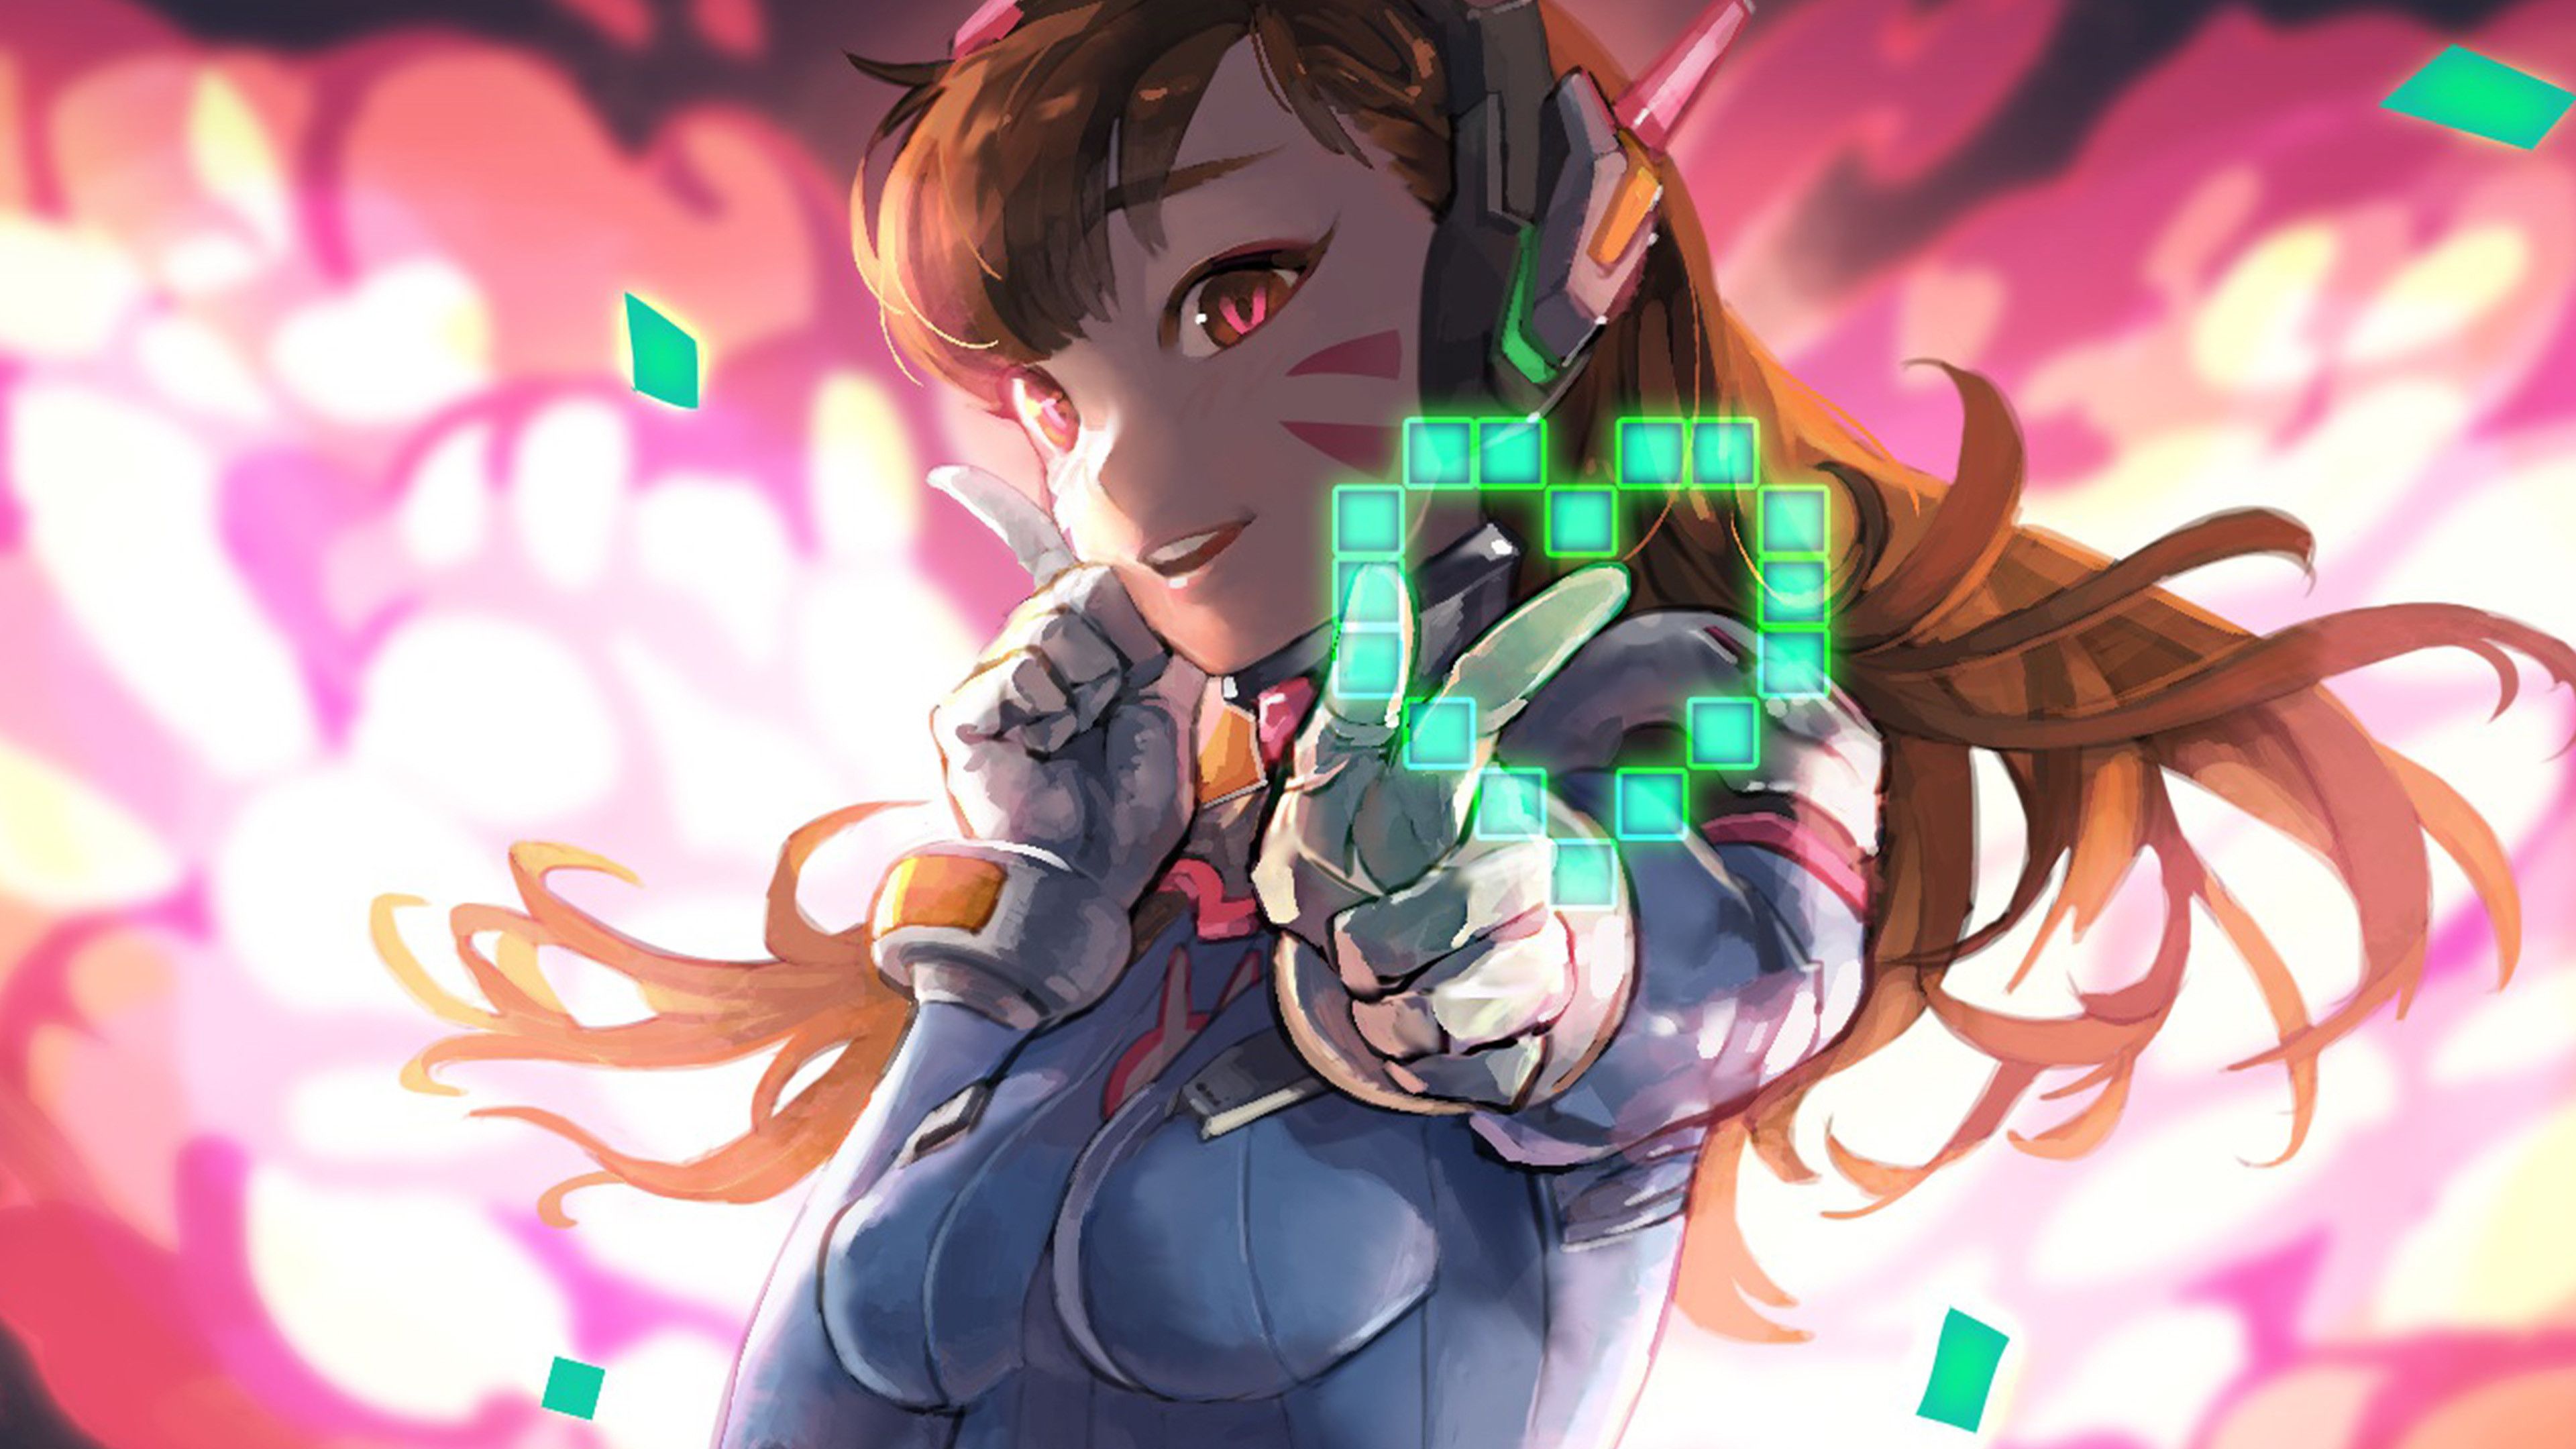 Gamer Girl Wallpaper on WallpaerChat